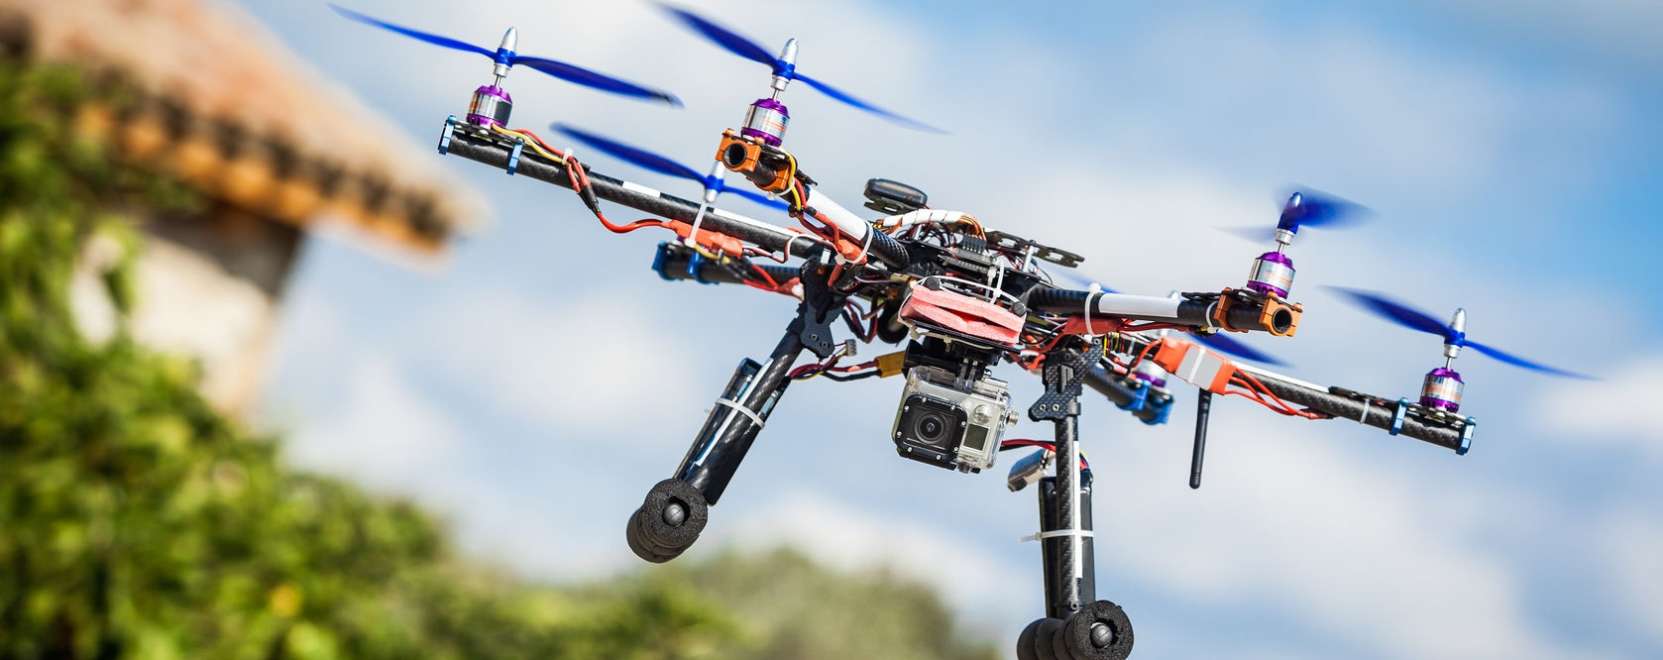 Drónok harca: piaci érdekek vs. biztonsági kockázatok